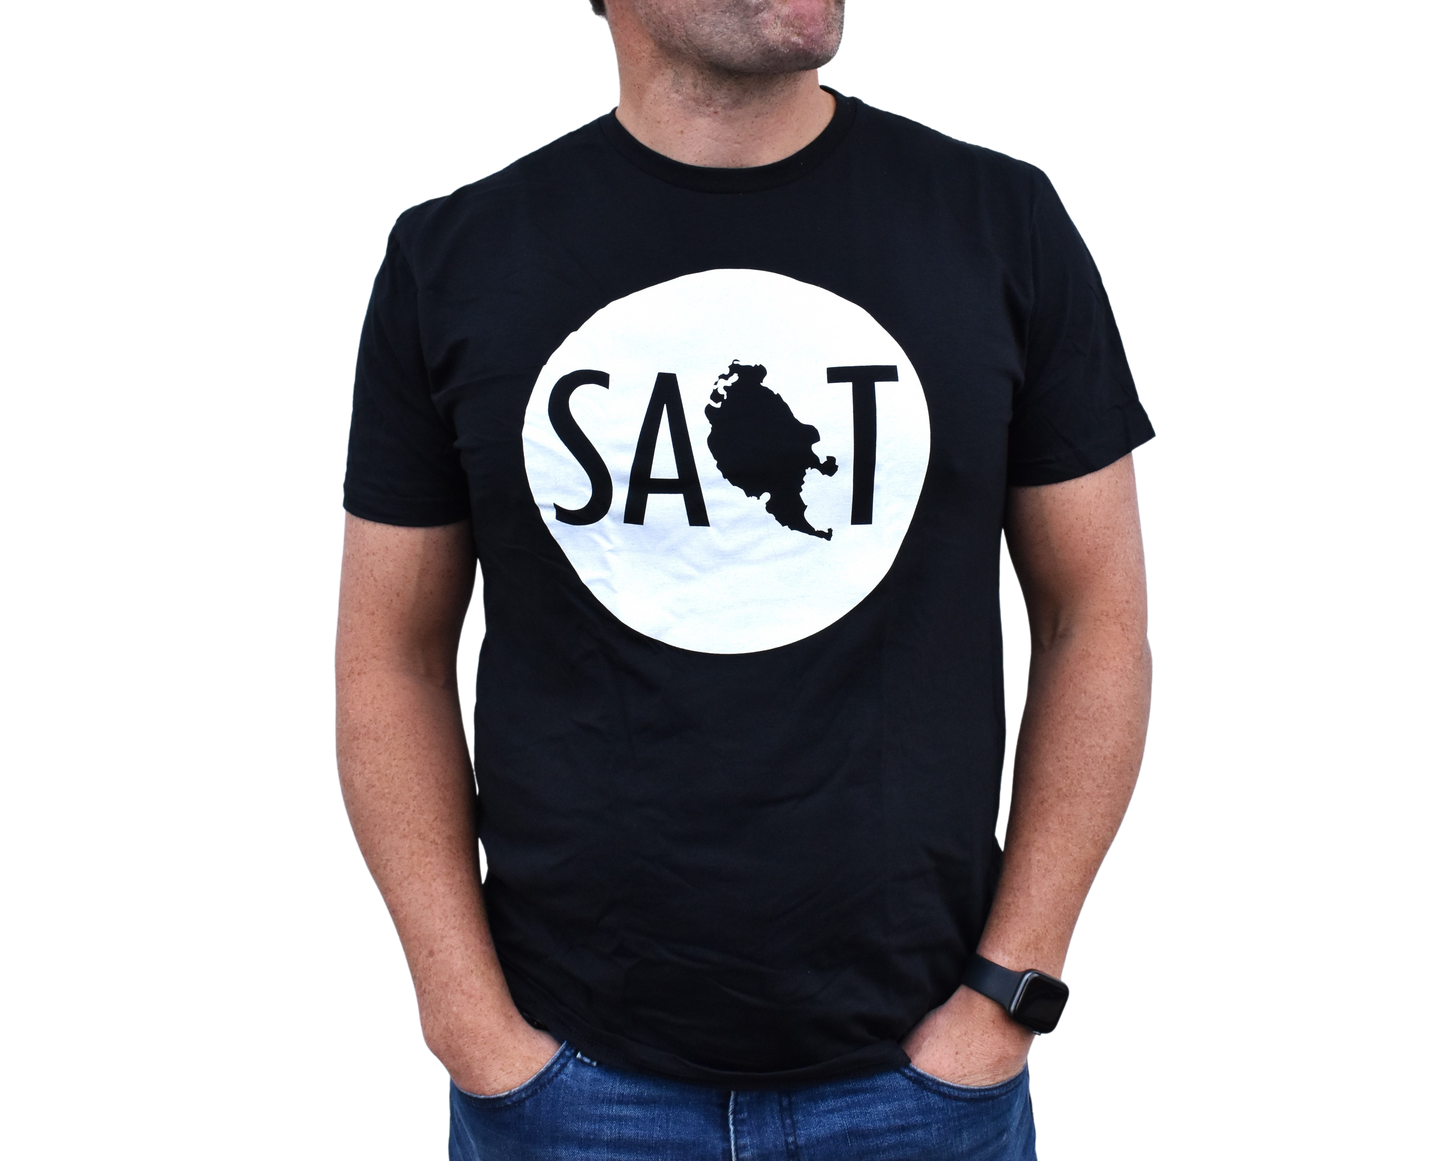 Salt Logo T-shirt